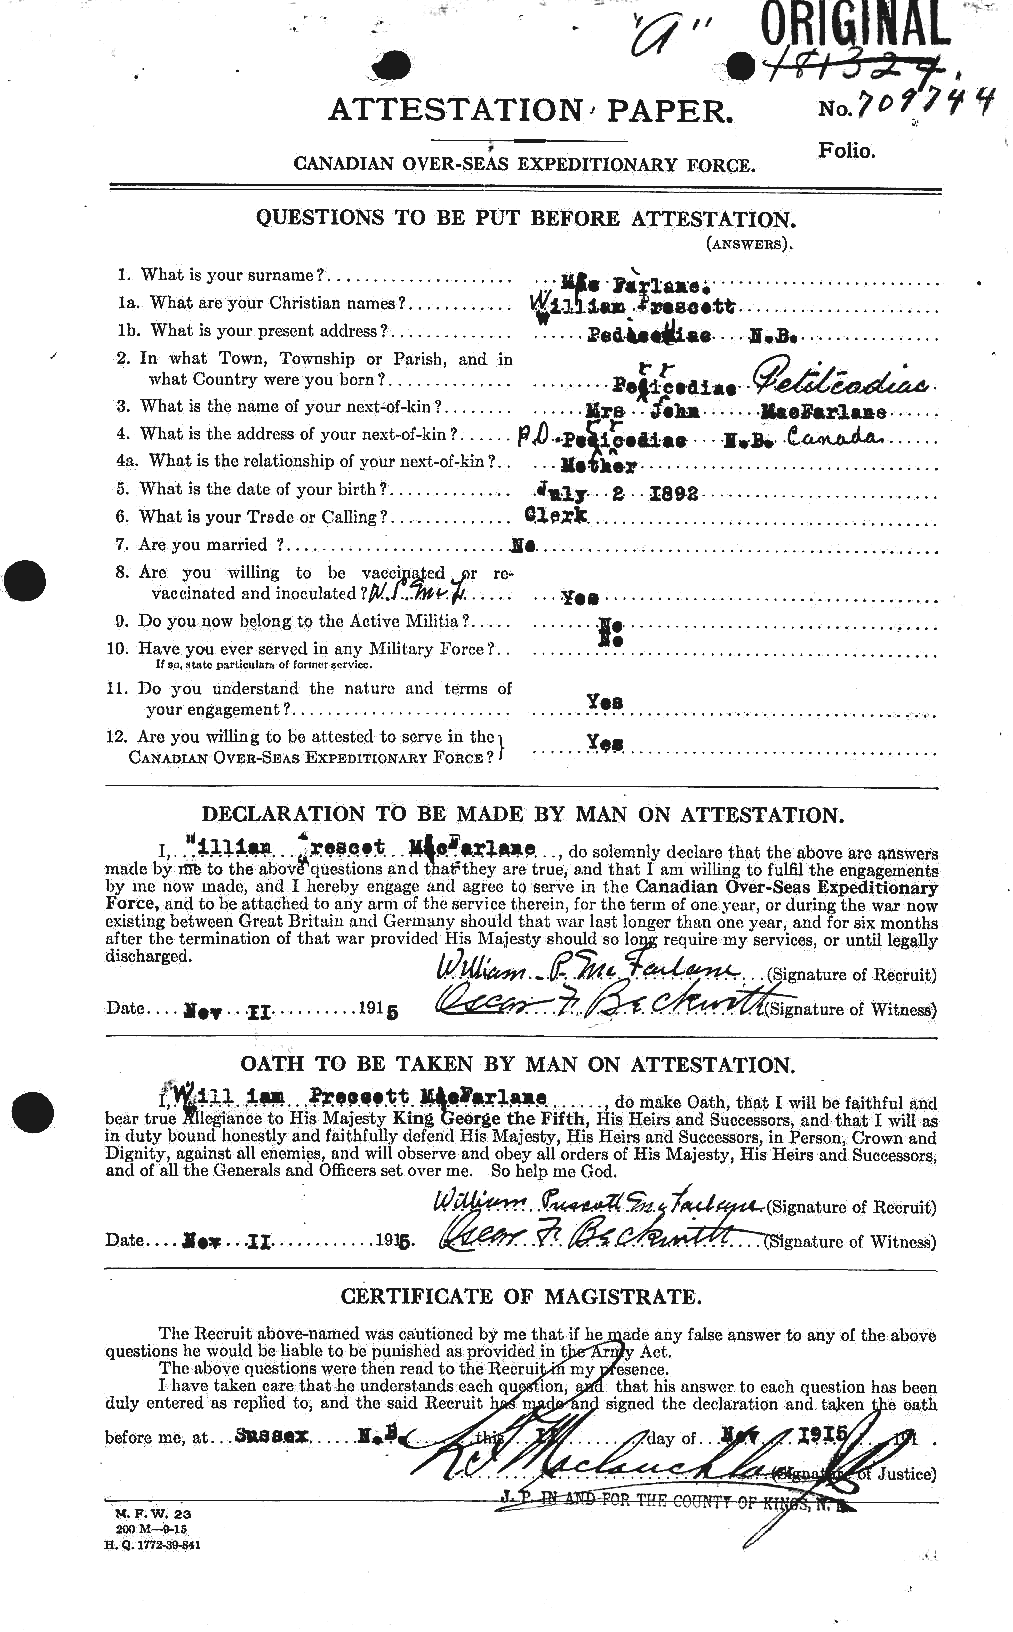 Dossiers du Personnel de la Première Guerre mondiale - CEC 522837a